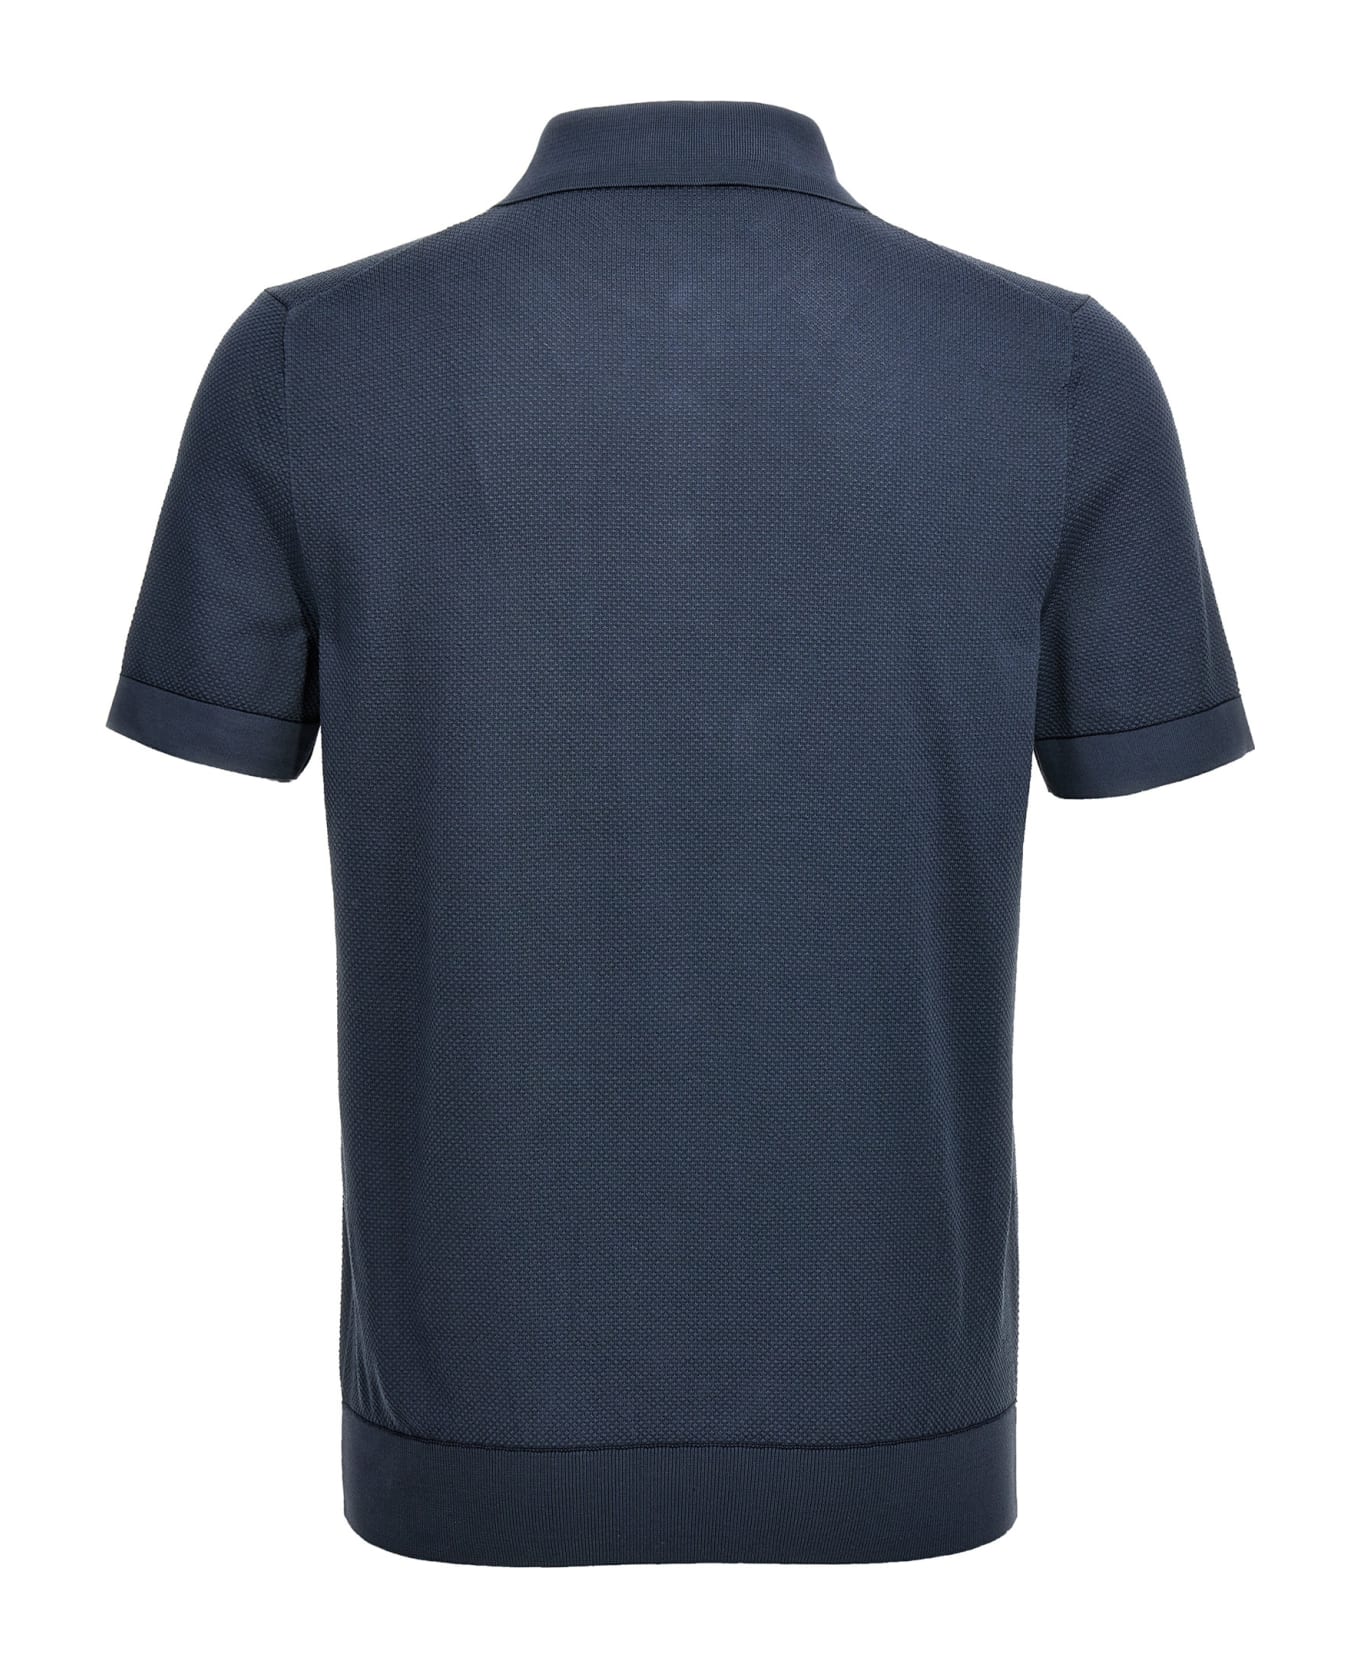 Brioni Textured Polo Shirt - Blue